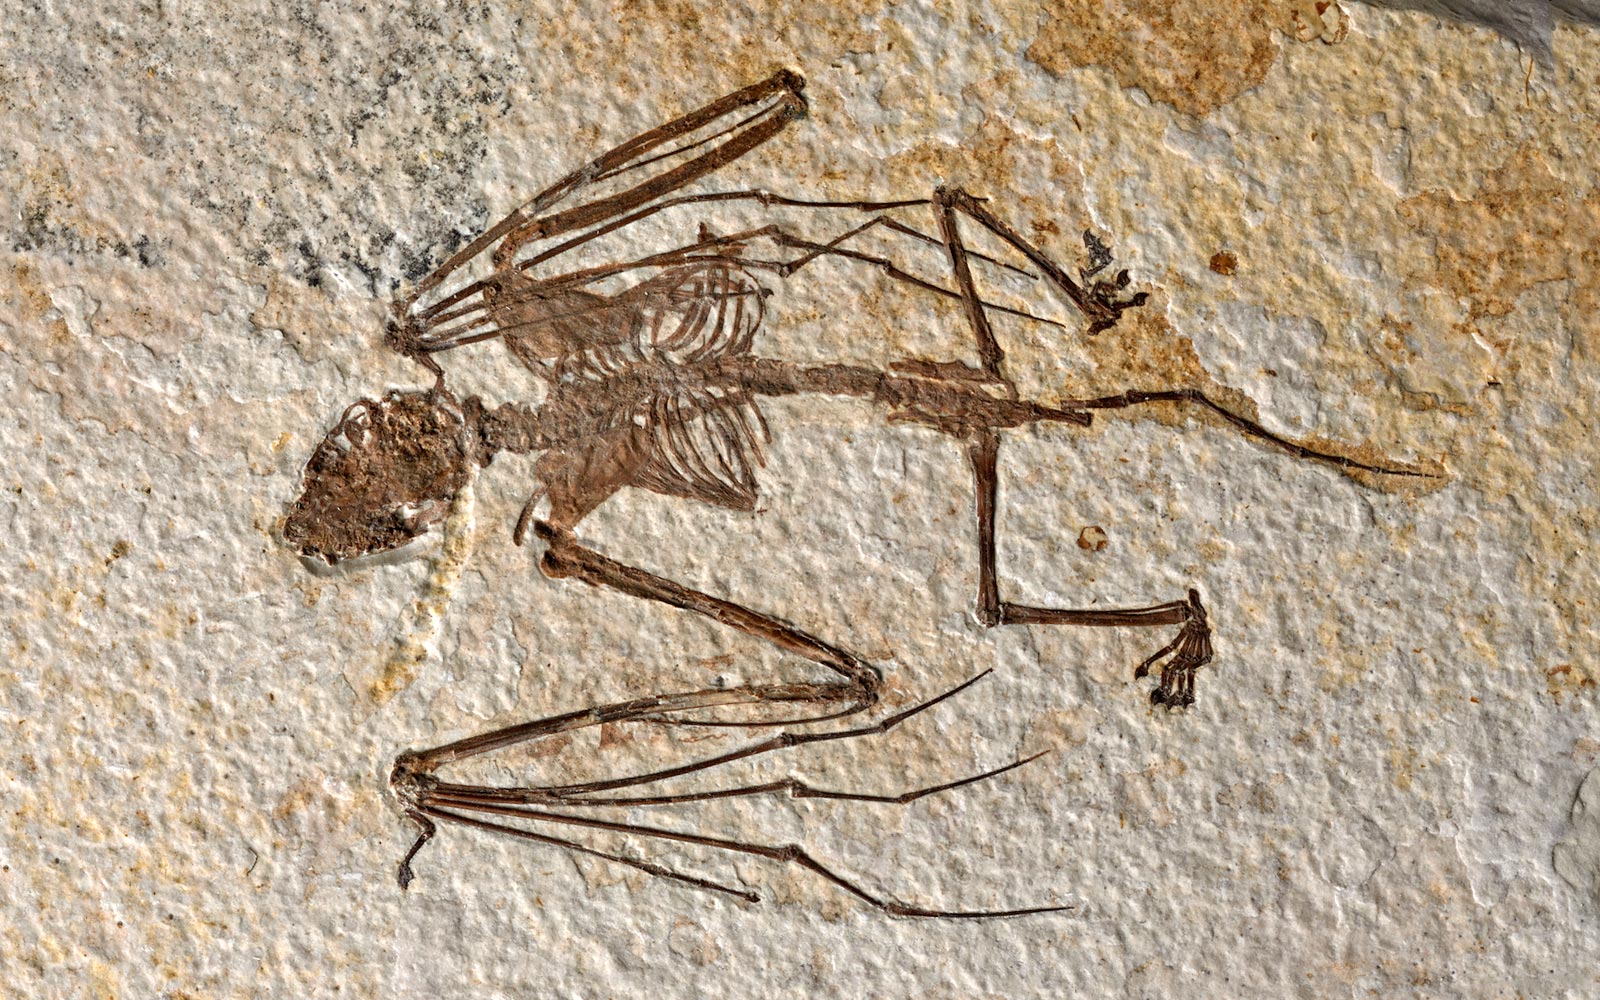 Un esqueleto de murciélago de 52 millones de años revela nuevas especies y pistas sobre la evolución de los mamíferos voladores